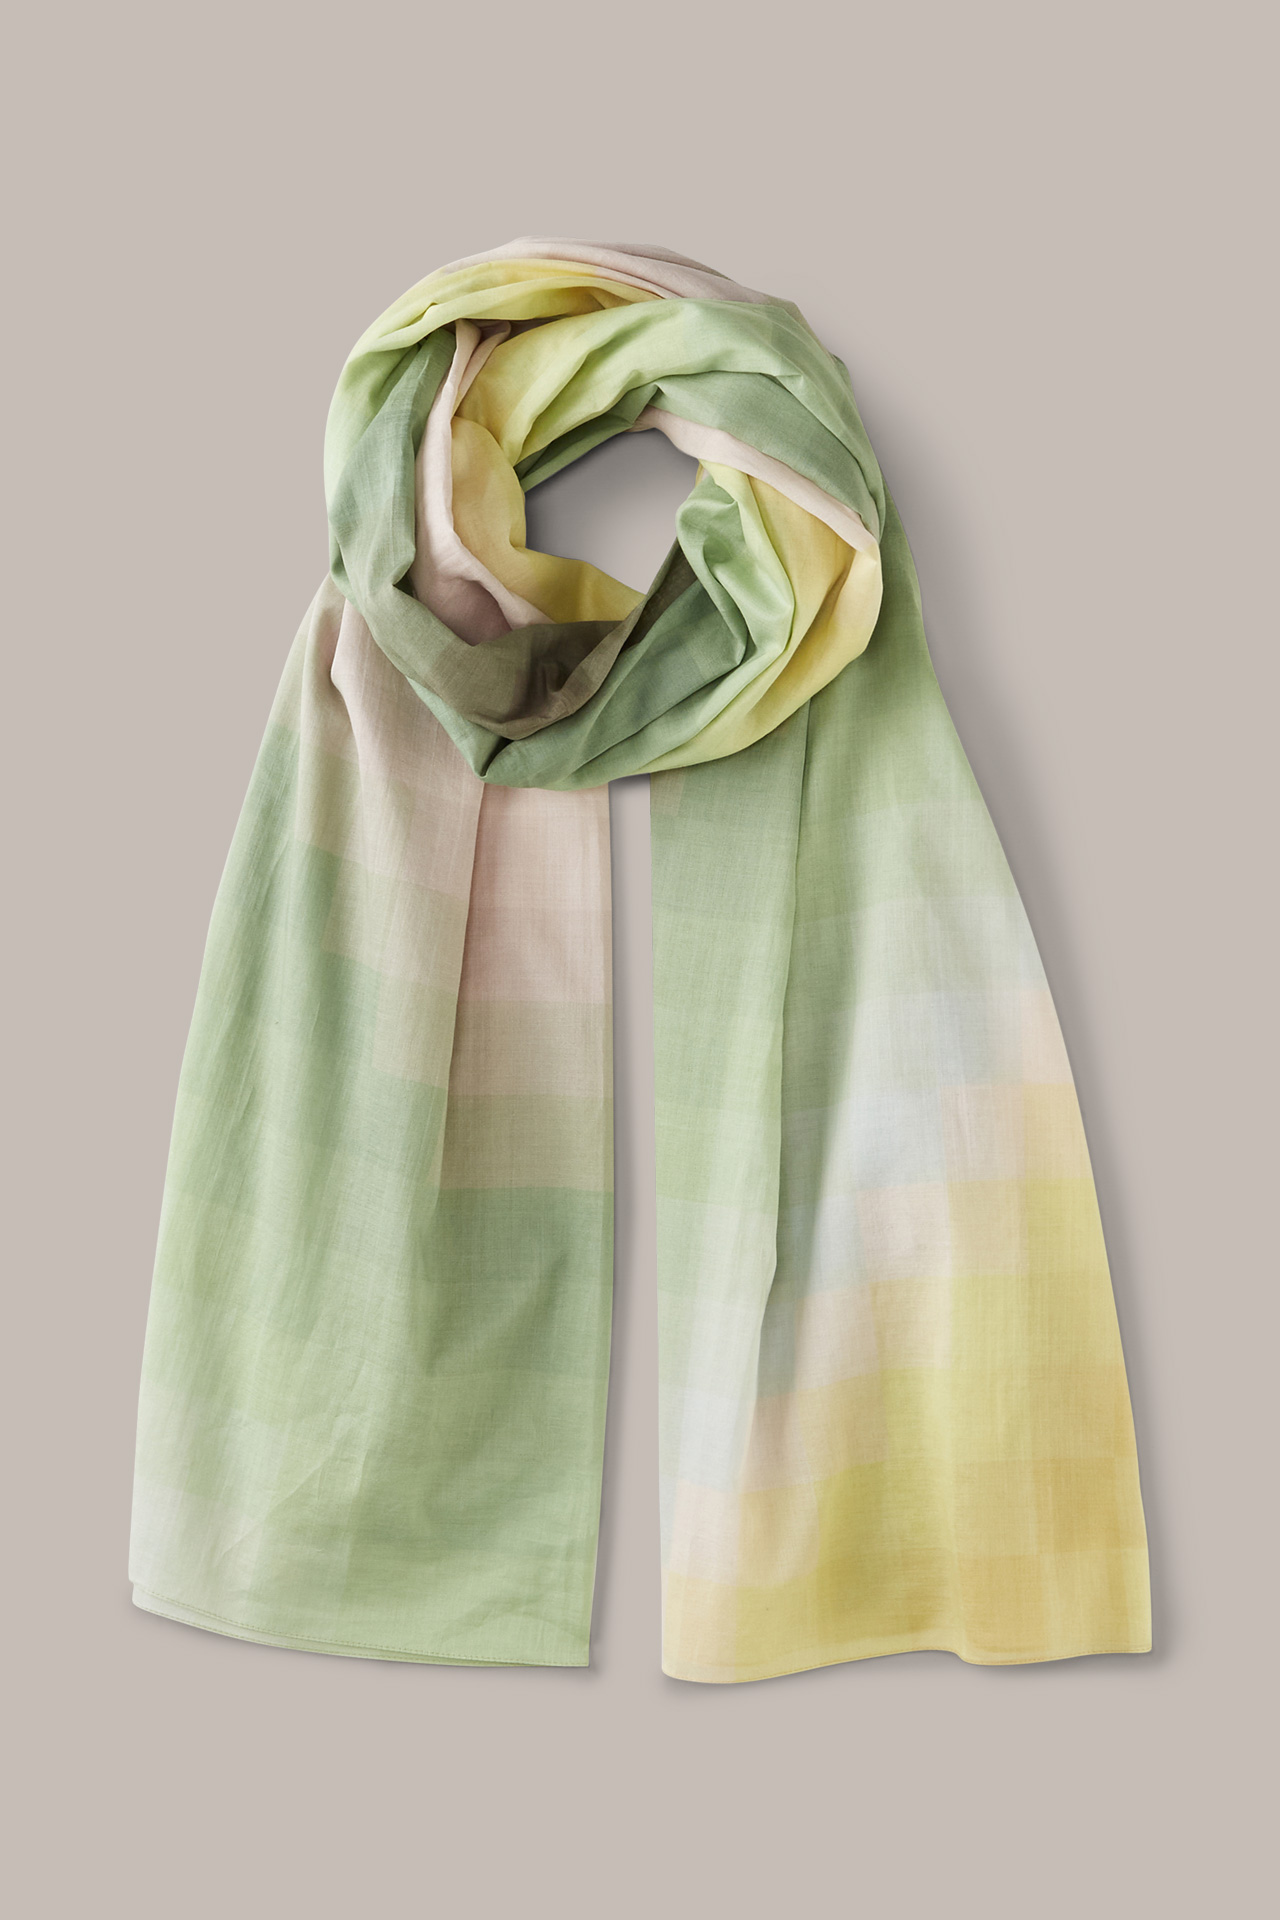 Print-Tuch aus Baumwolle in Hellgrün-Gelb-Oliv gemustert